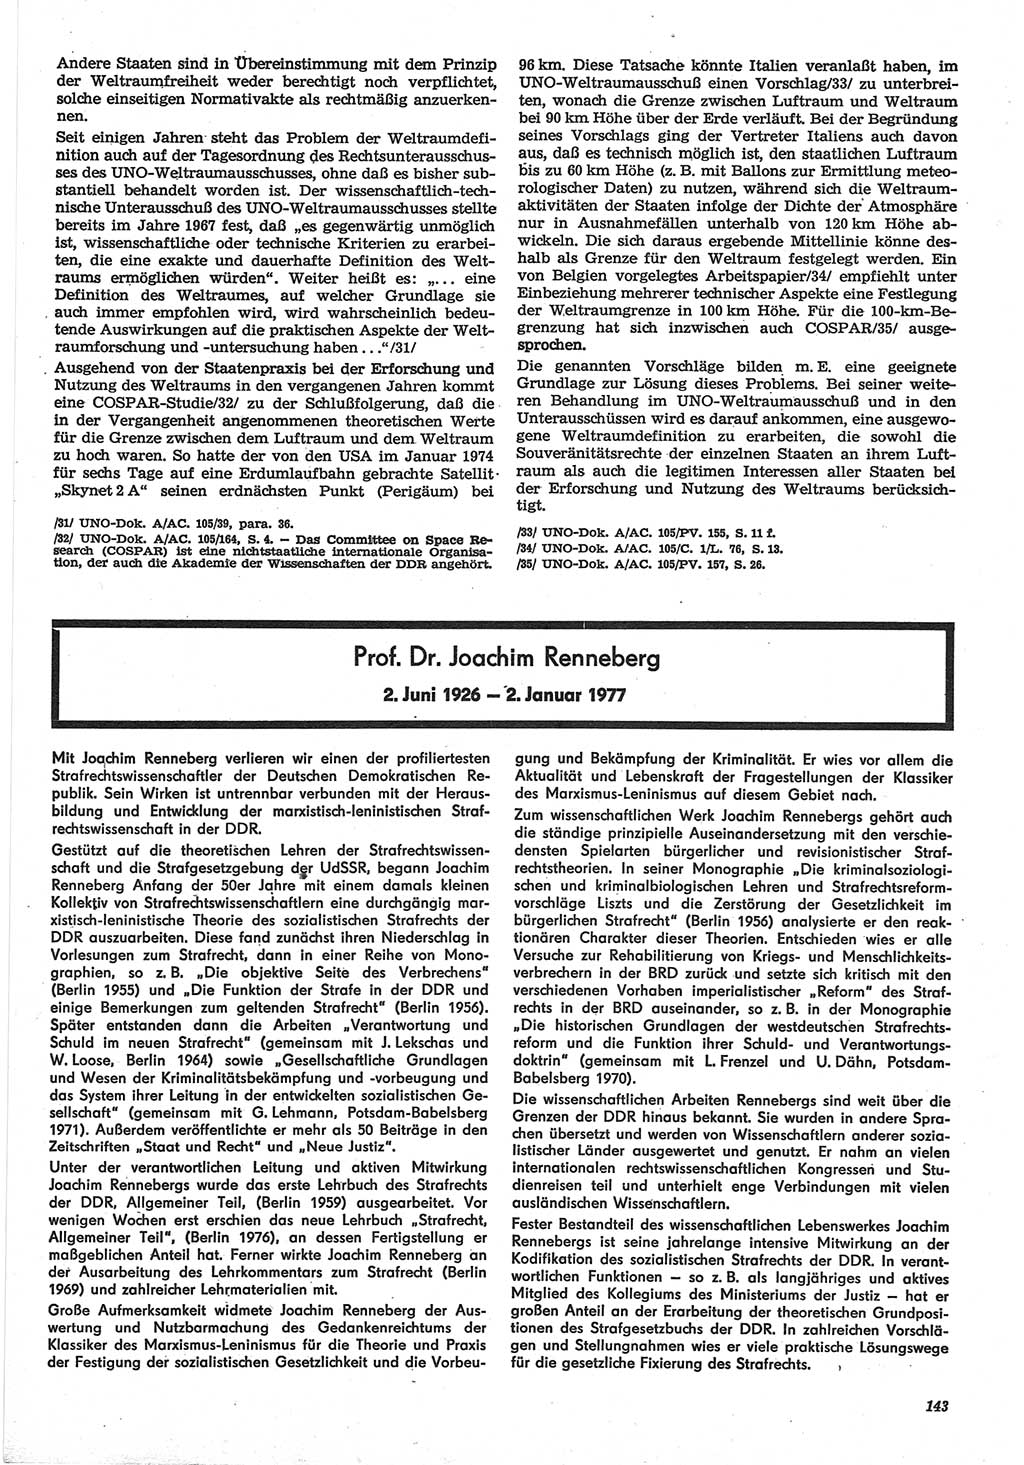 Neue Justiz (NJ), Zeitschrift für Recht und Rechtswissenschaft-Zeitschrift, sozialistisches Recht und Gesetzlichkeit, 31. Jahrgang 1977, Seite 143 (NJ DDR 1977, S. 143)